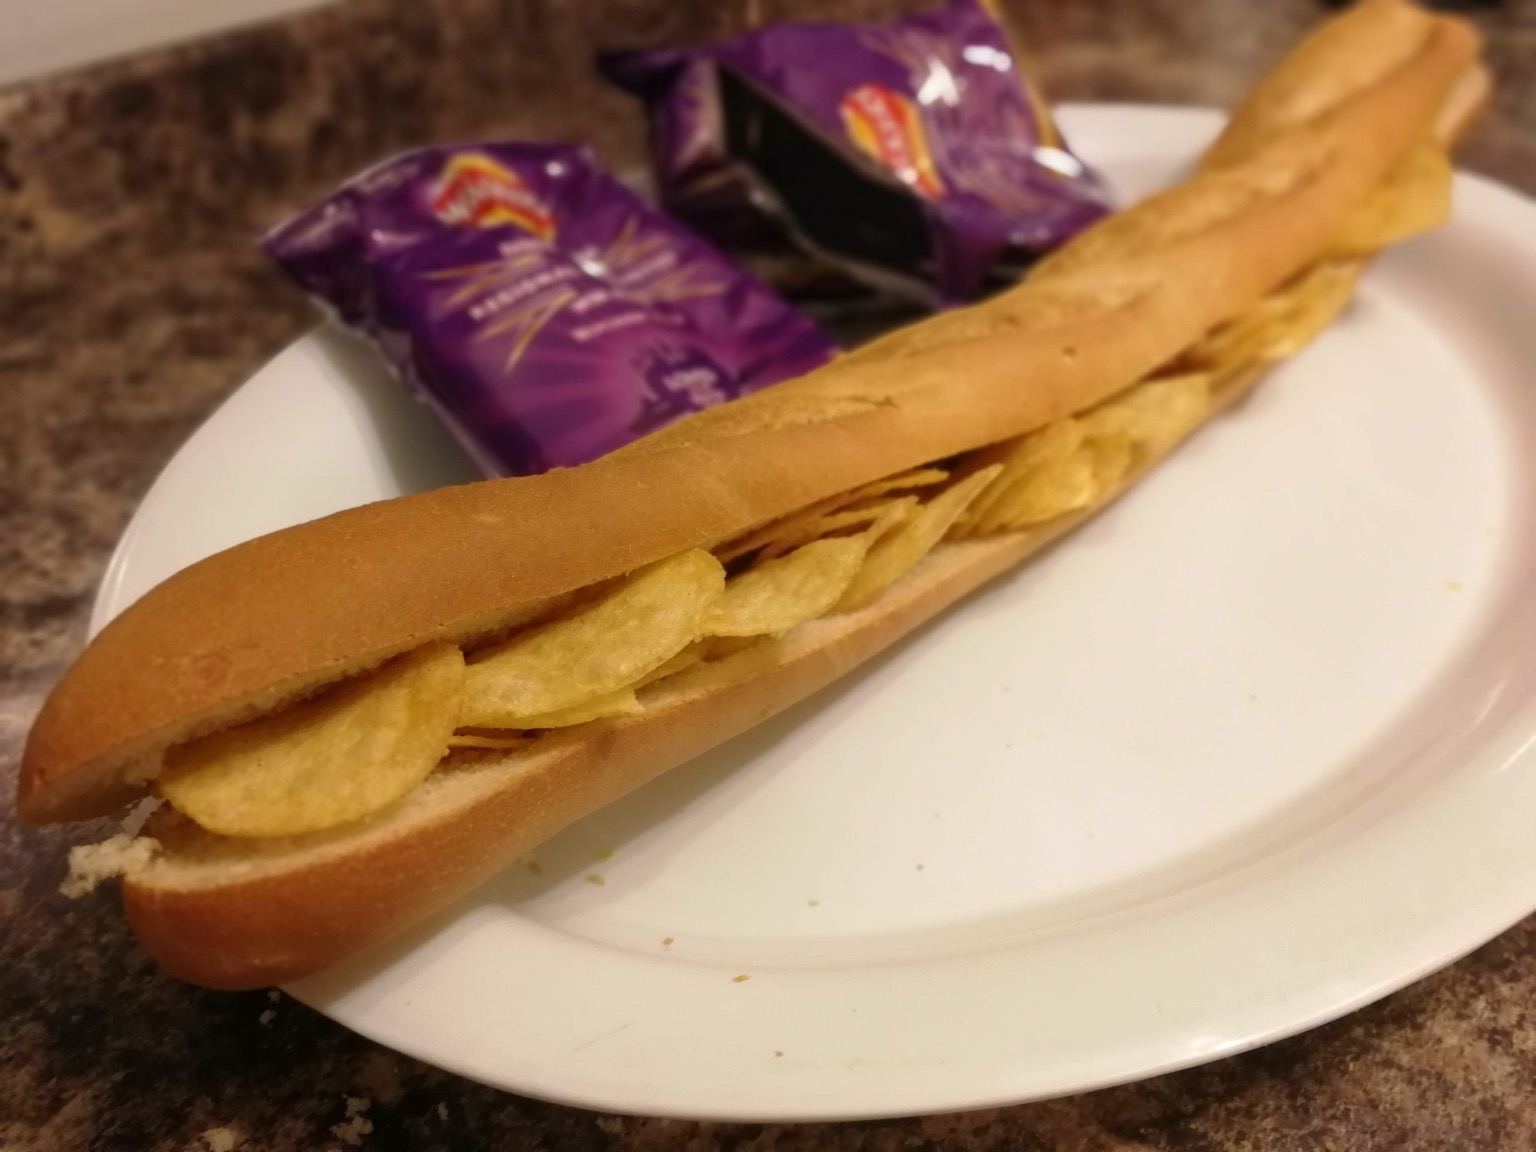 Long crisp-filled baguette alongside empty bags